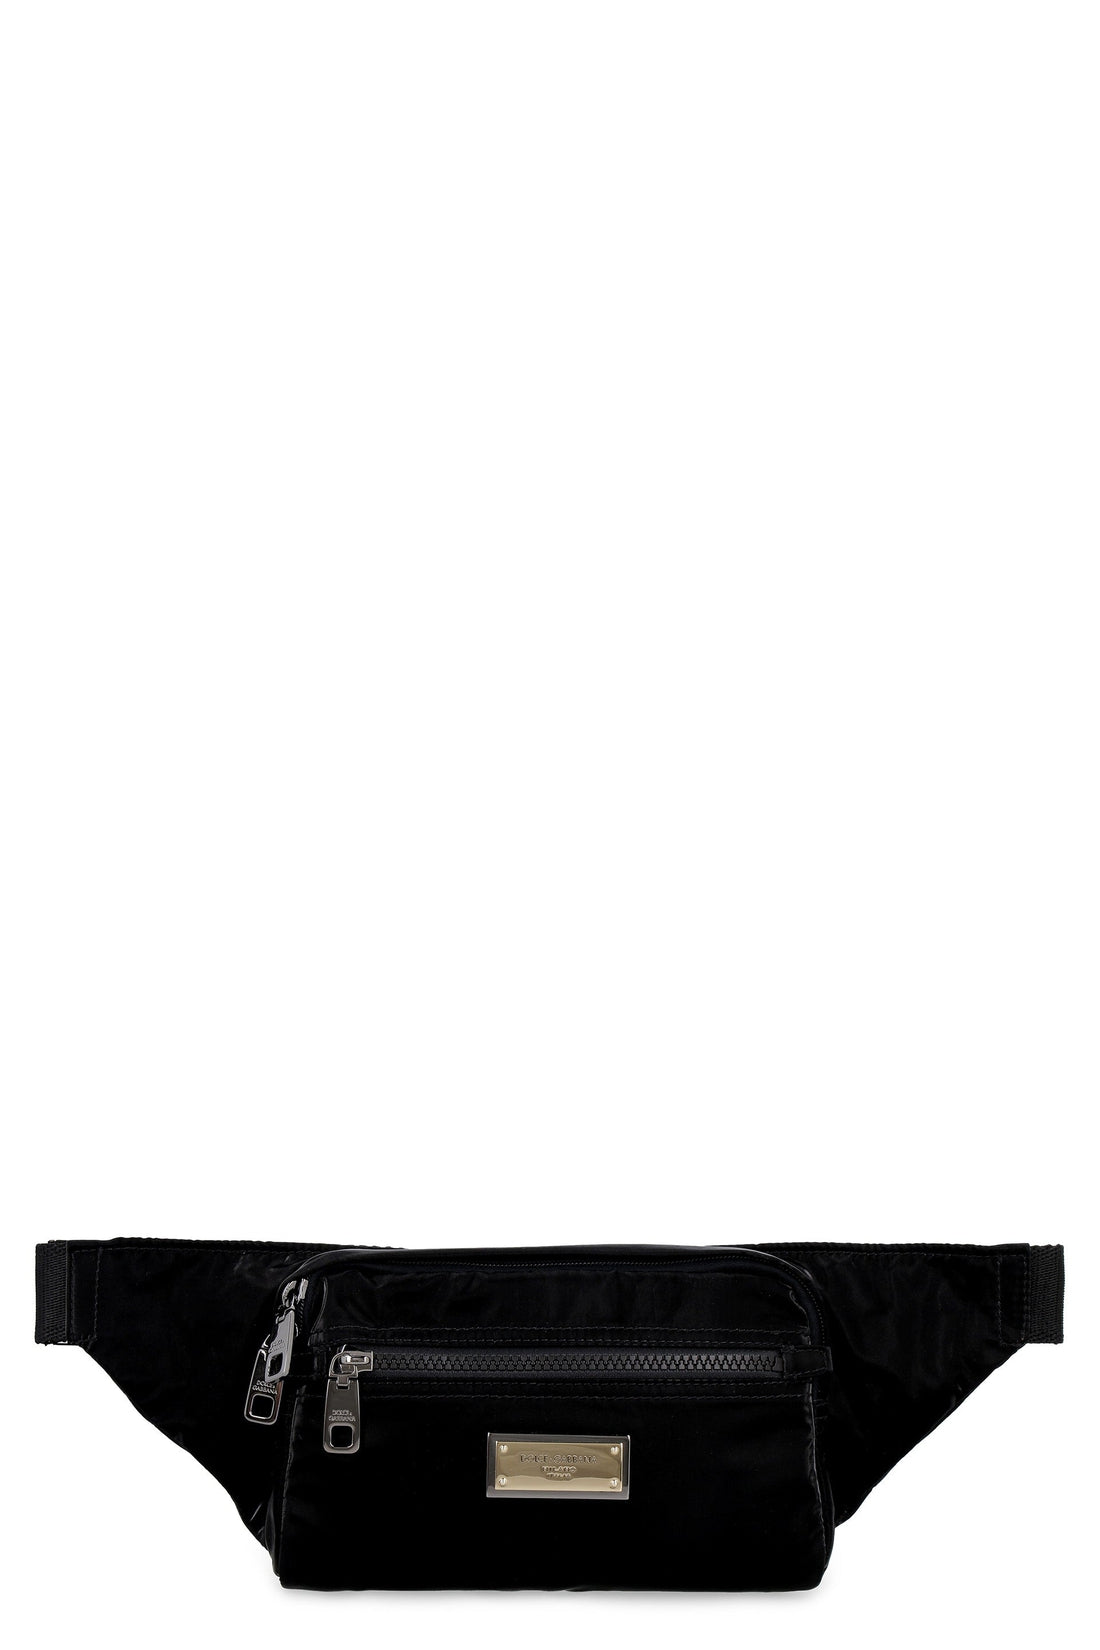 Dolce & Gabbana-OUTLET-SALE-Belt bag with logo-ARCHIVIST